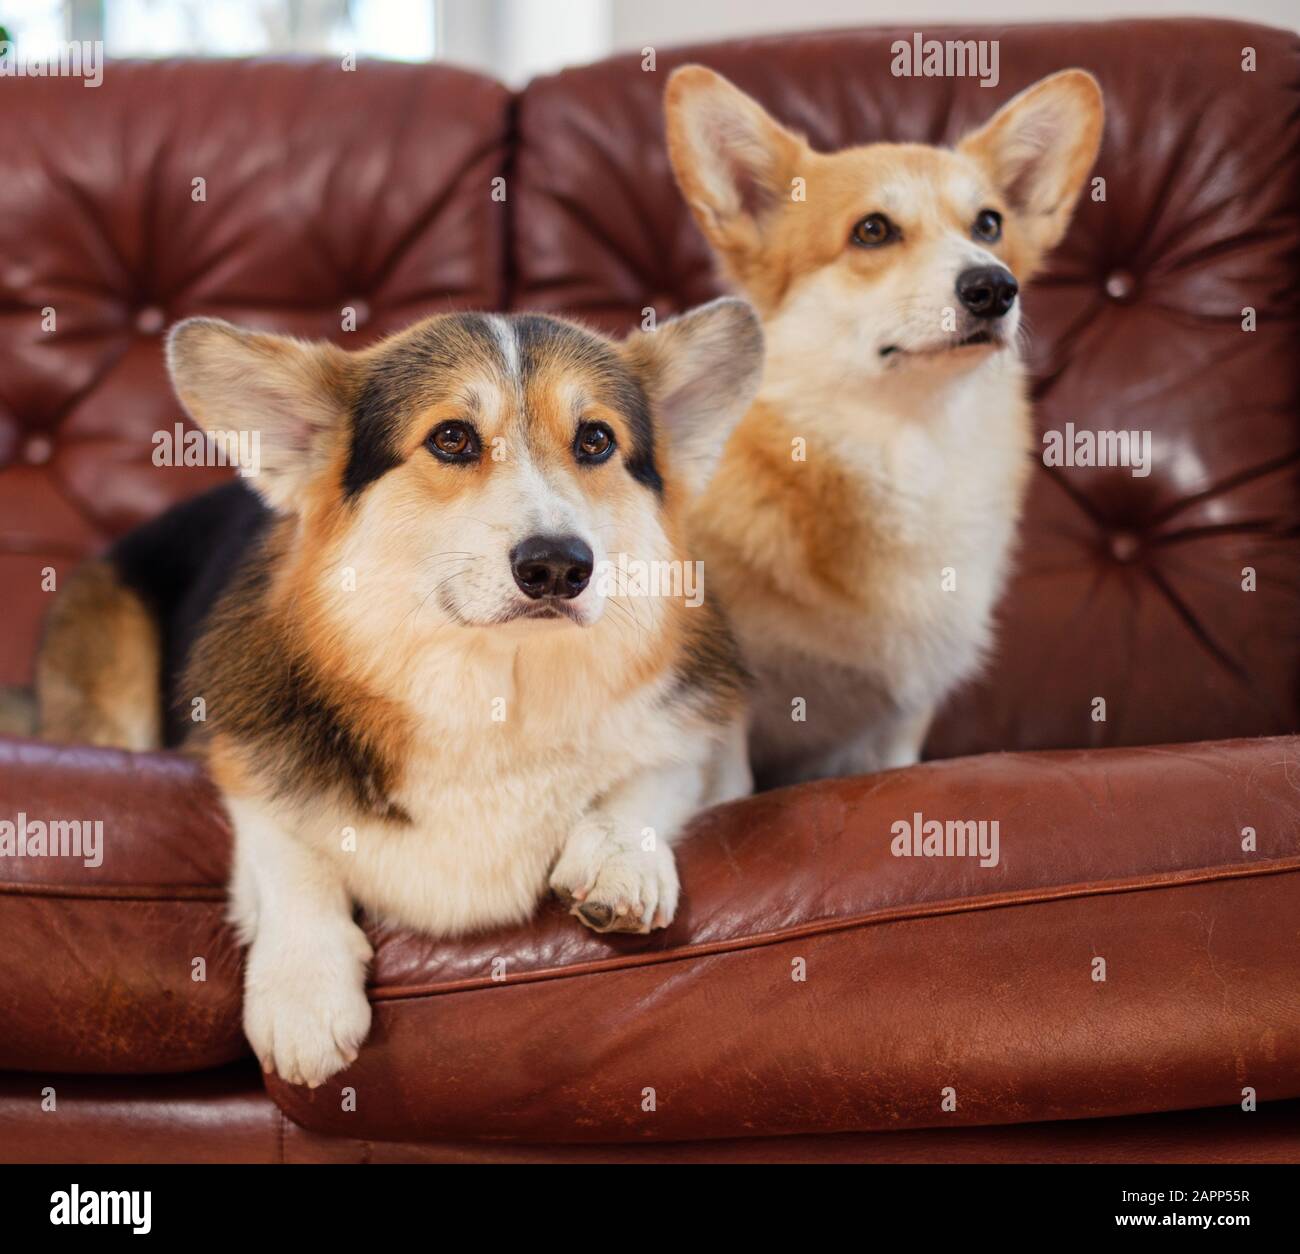 Two cute corgi dogs on a sofa Stock Photo